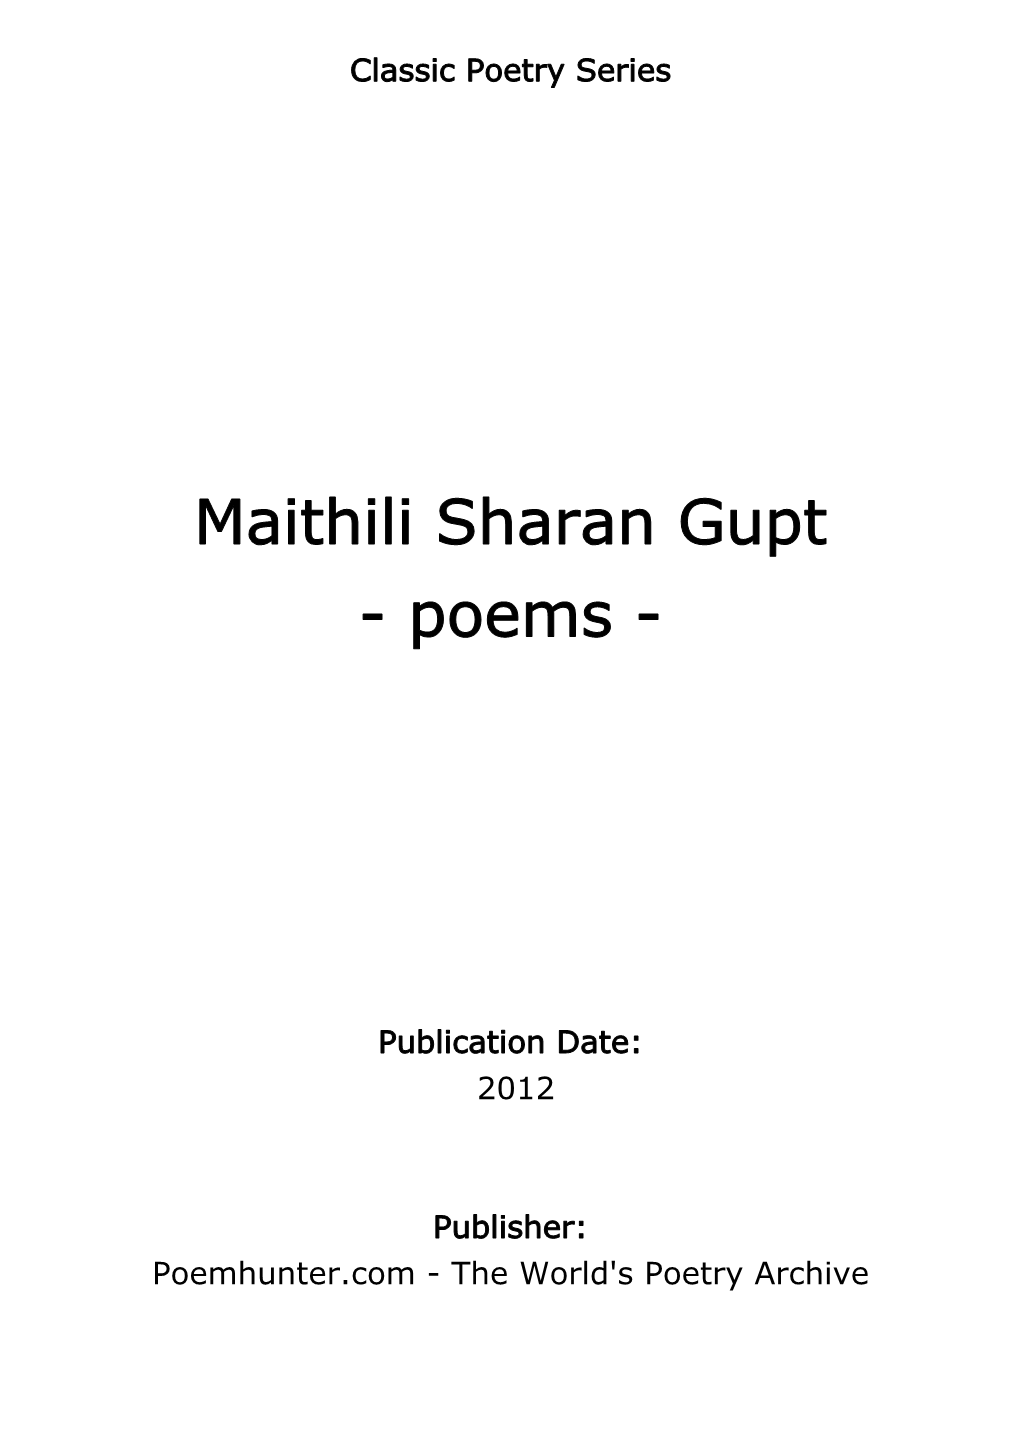 Maithili Sharan Gupt - Poems